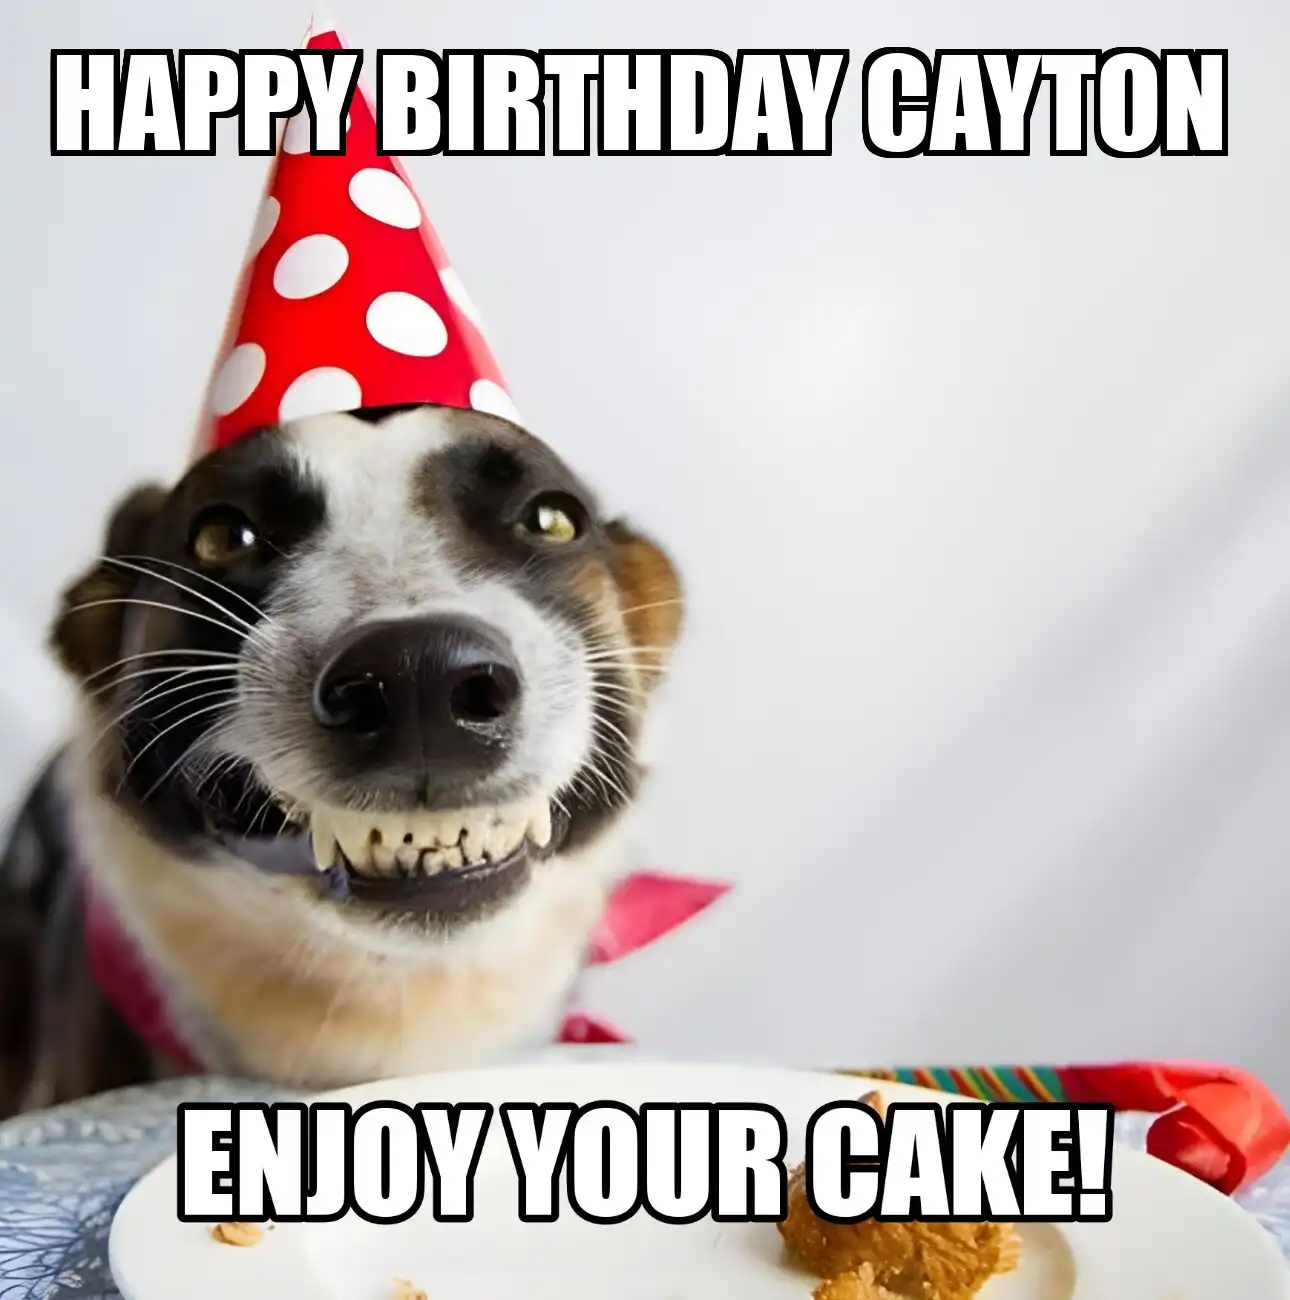 Happy Birthday Cayton Enjoy Your Cake Dog Meme